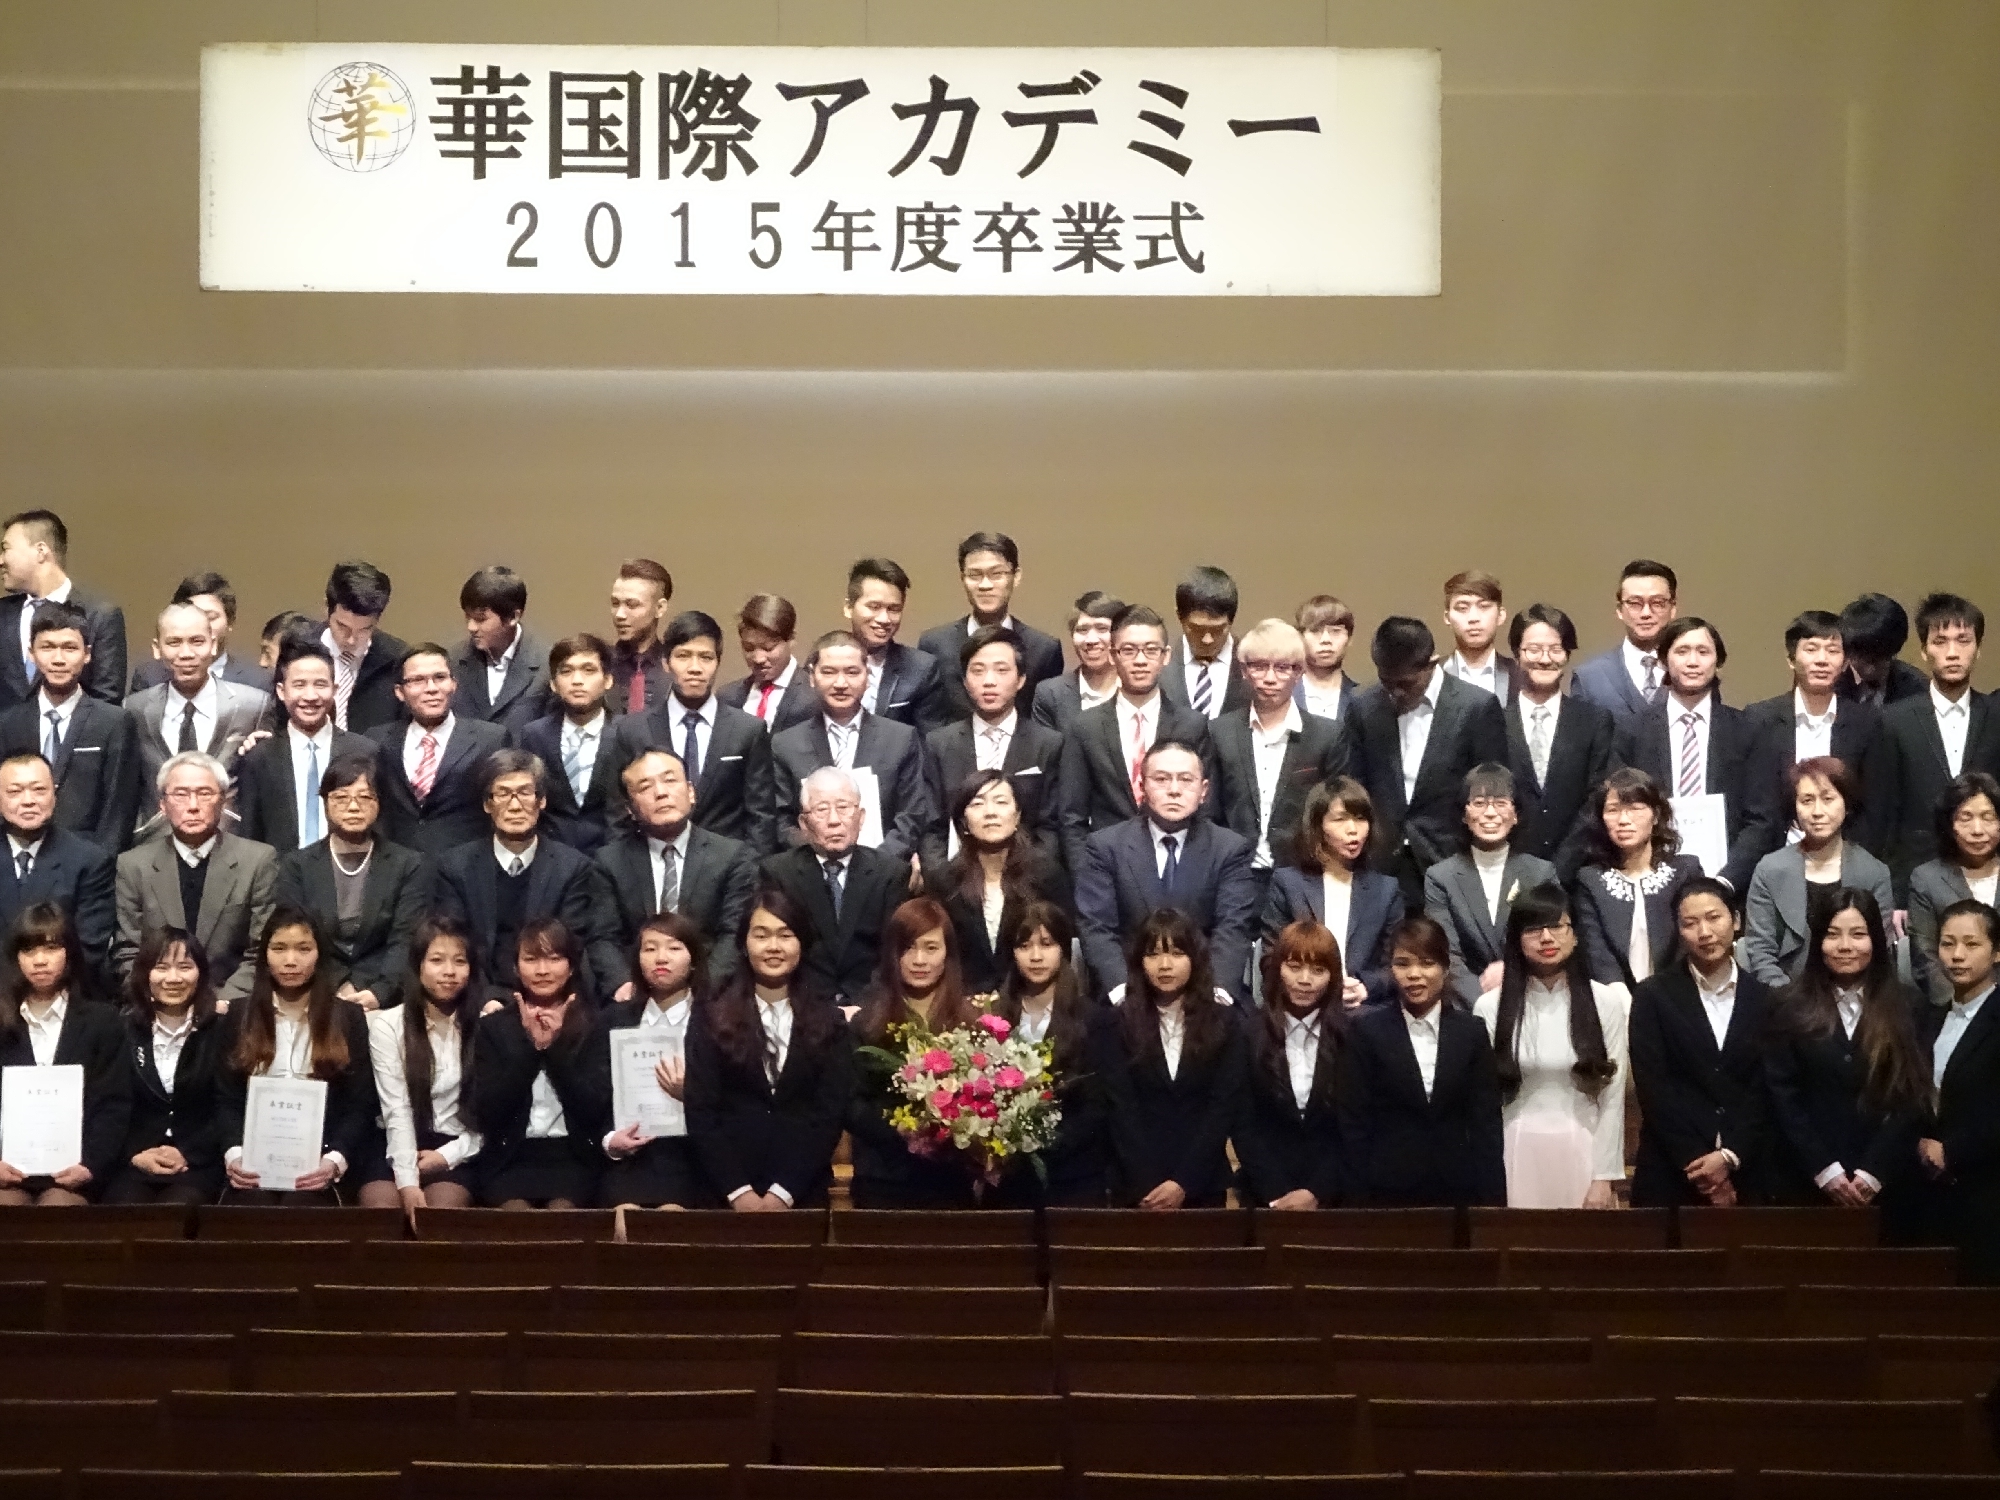 2016/03  2015年度卒業式   The graduation ceremony for the 2015 students. 